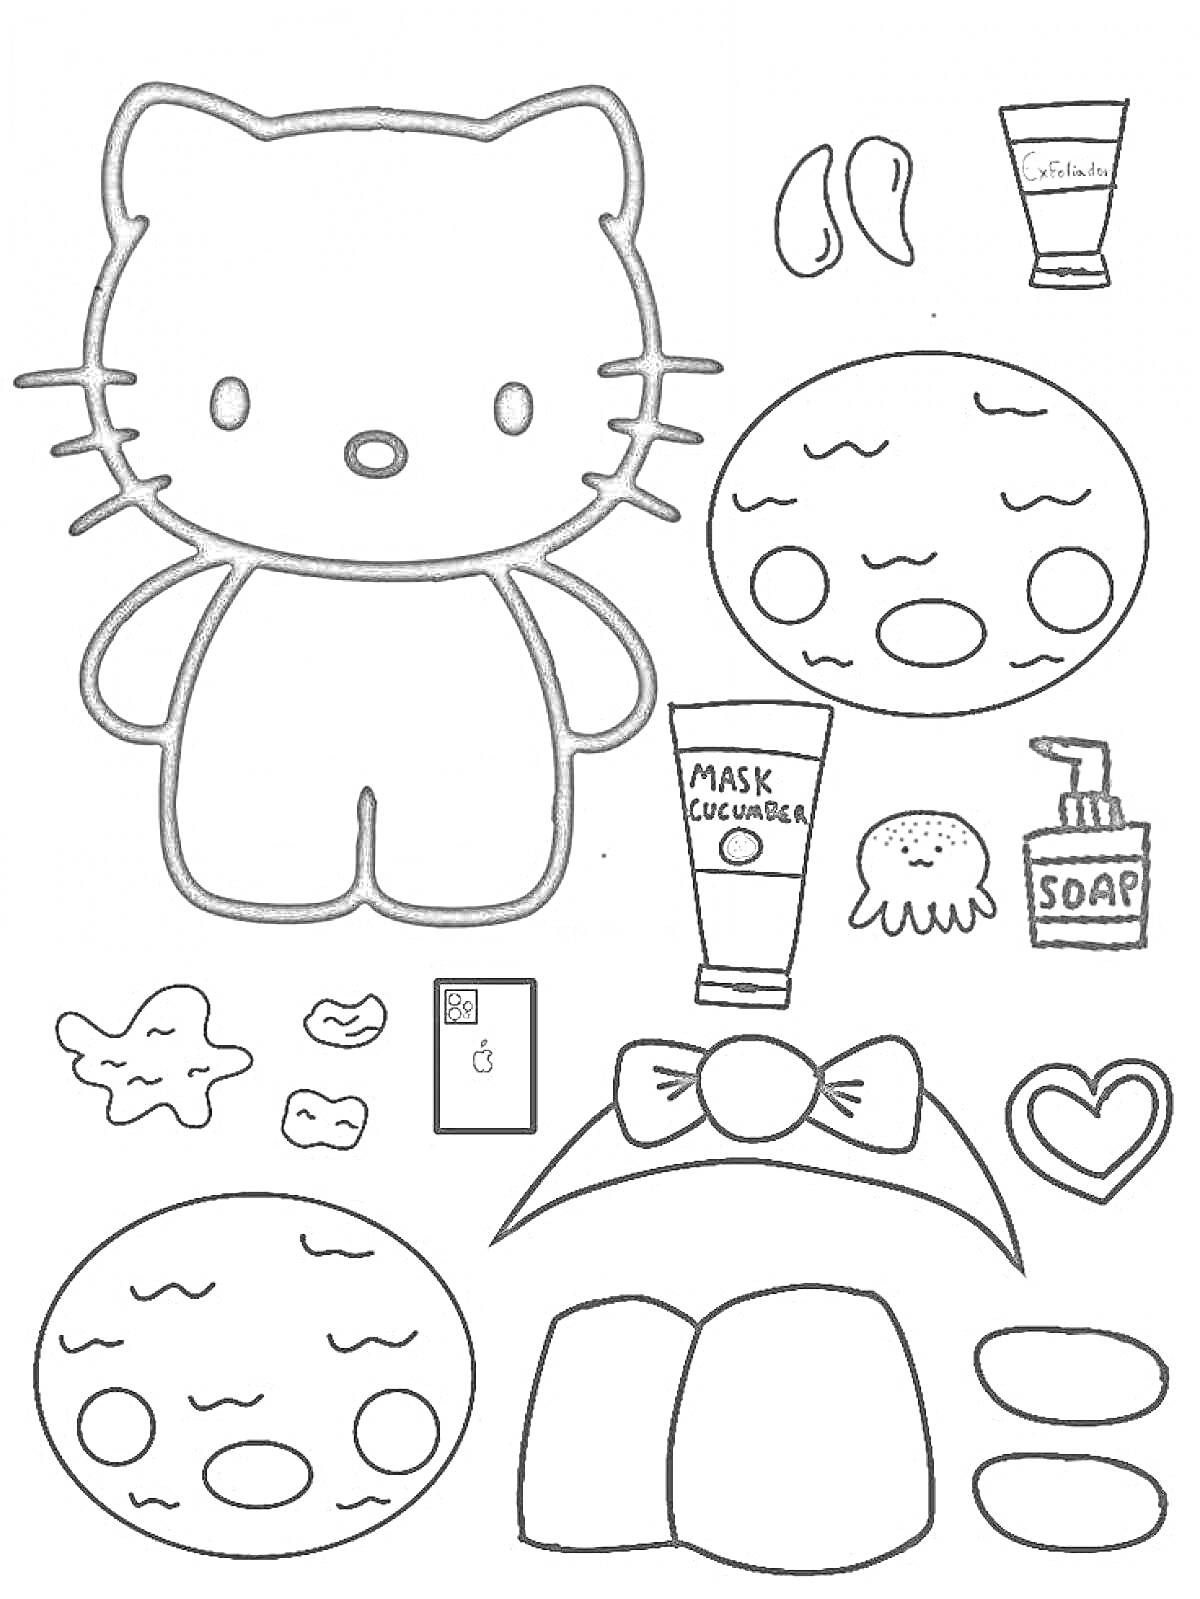 Раскраска Hello Kitty с косметическими принадлежностями и маской для лица, бантик, маска с огурцами, мыло, губка, сердечко, патчи, расческа, две маски для лица.